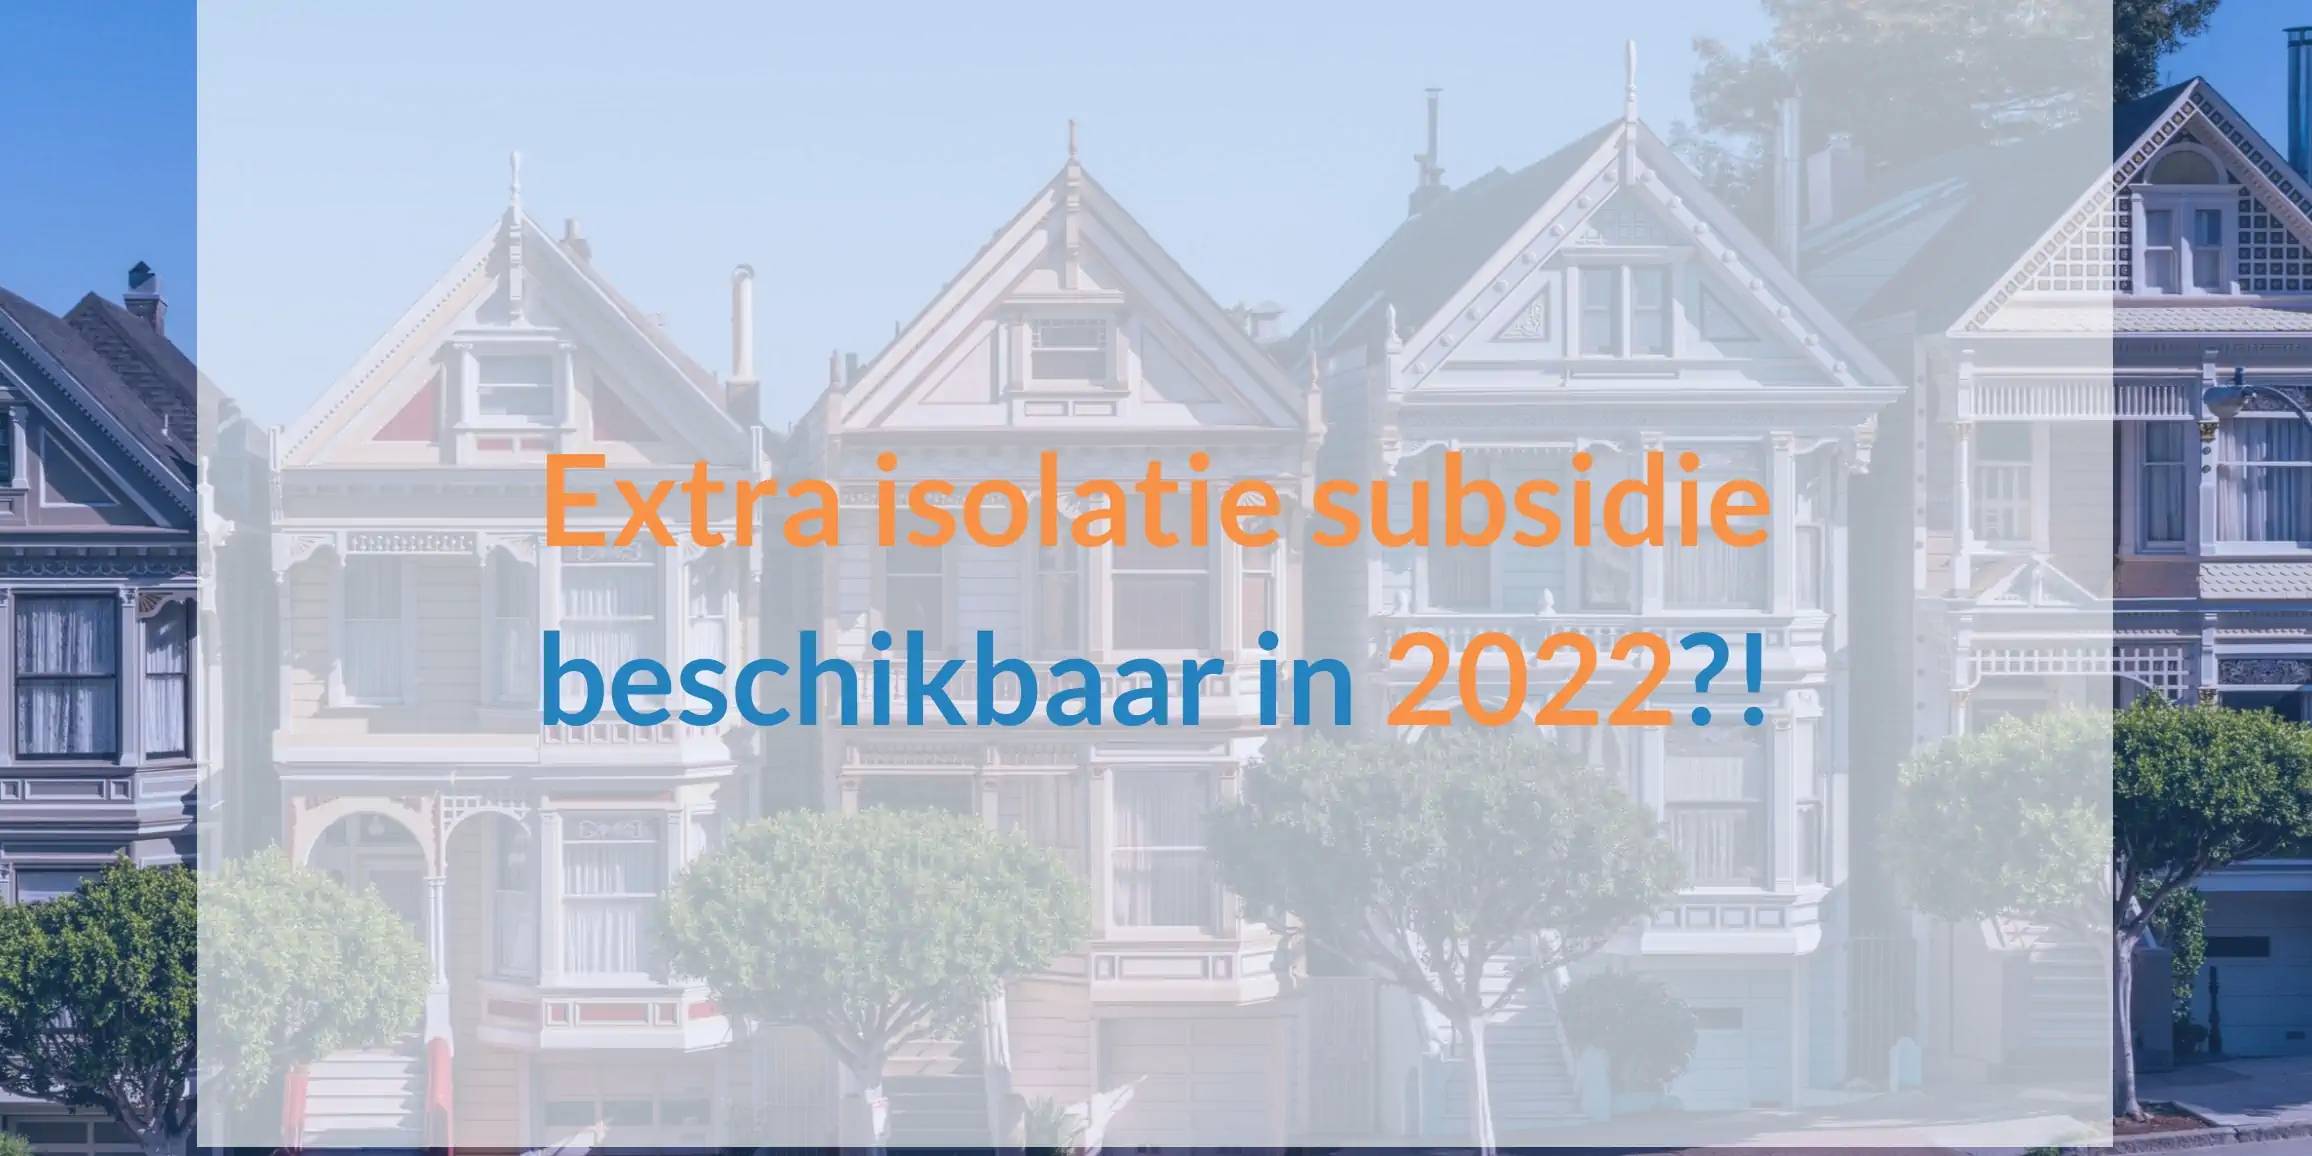 Extra isolatie subsidie beschikbaar in 2022?!